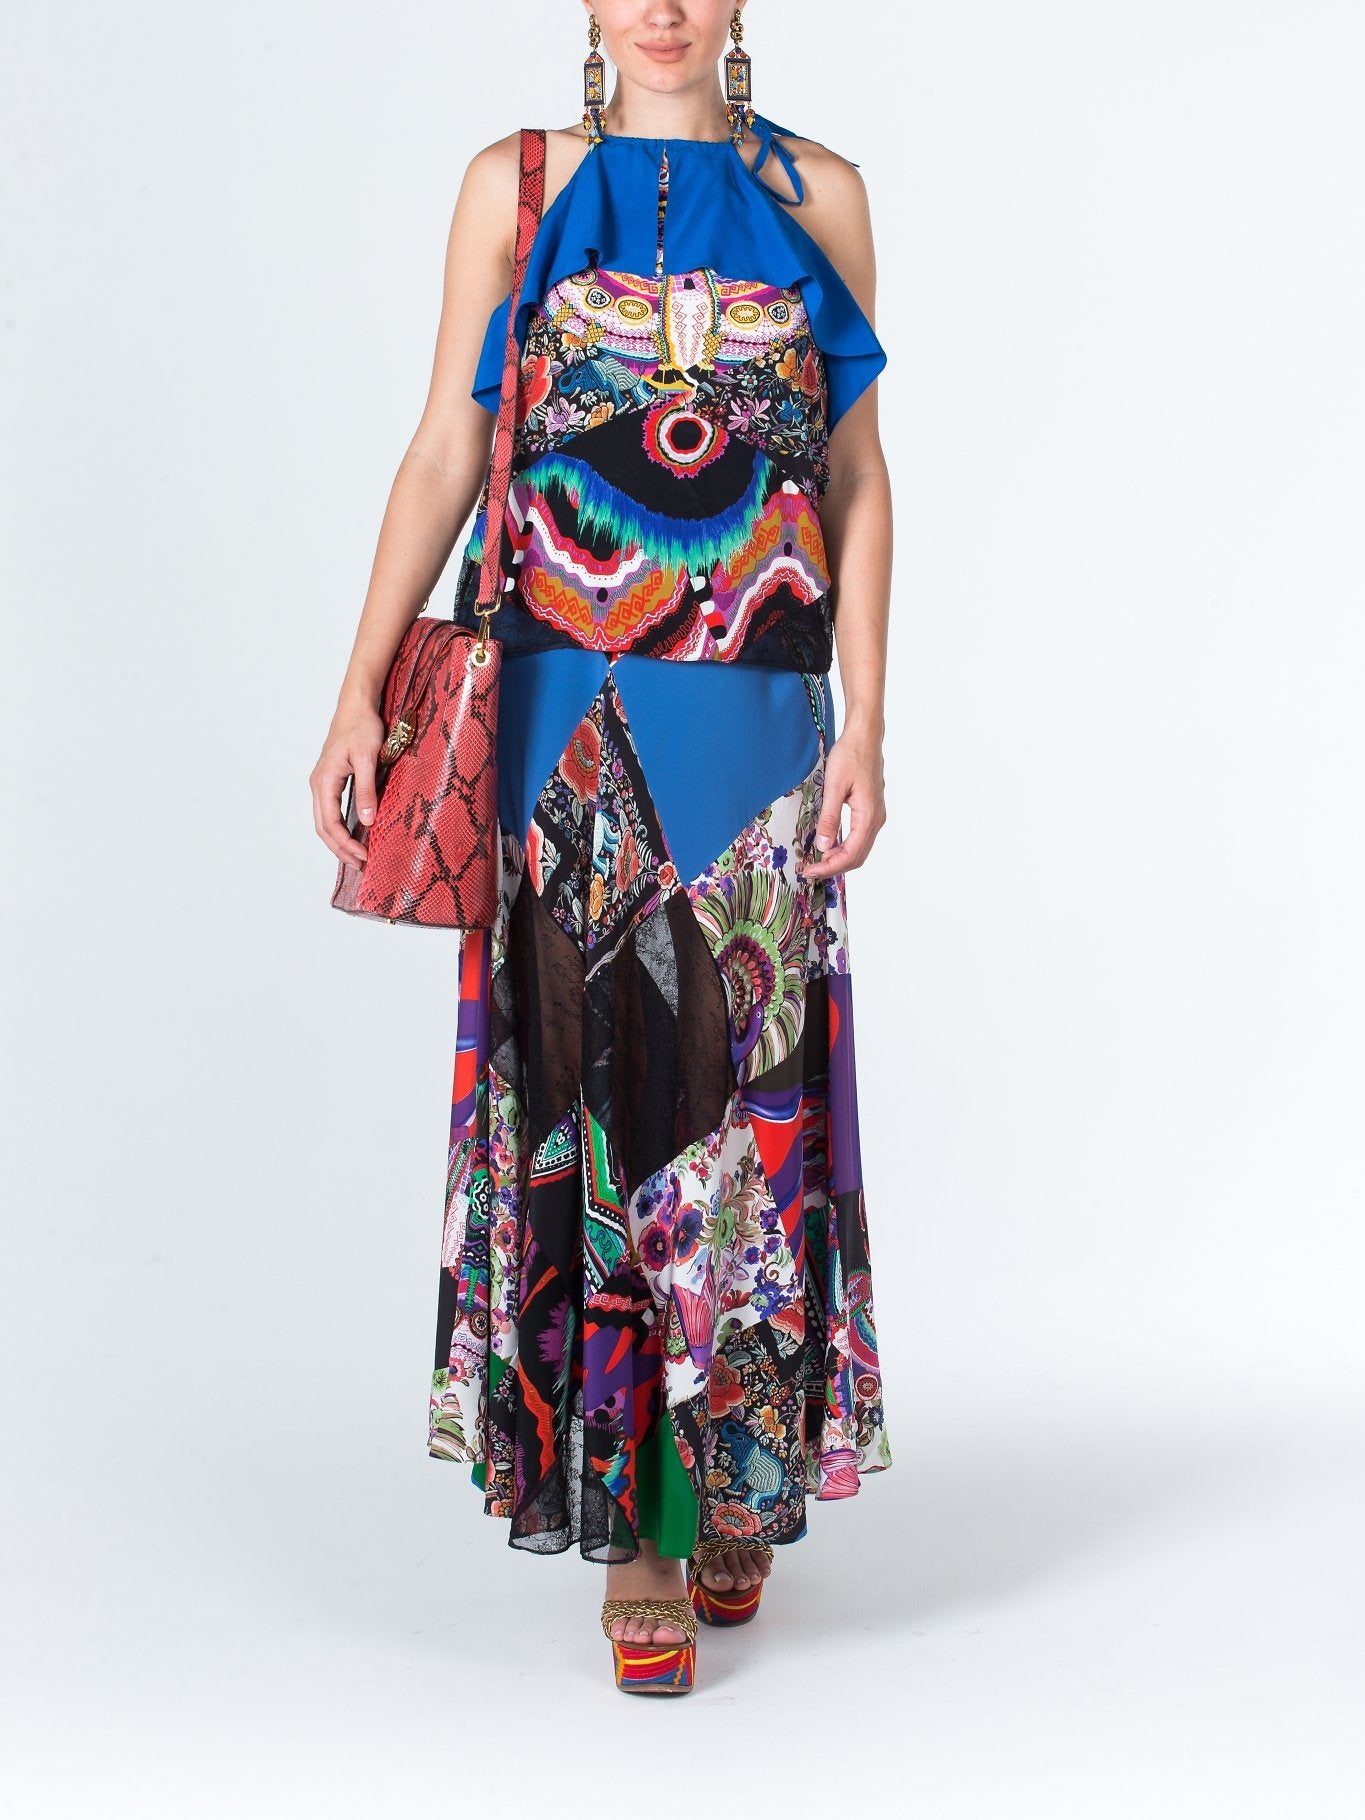 Разноцветная юбка с кружевными вставками